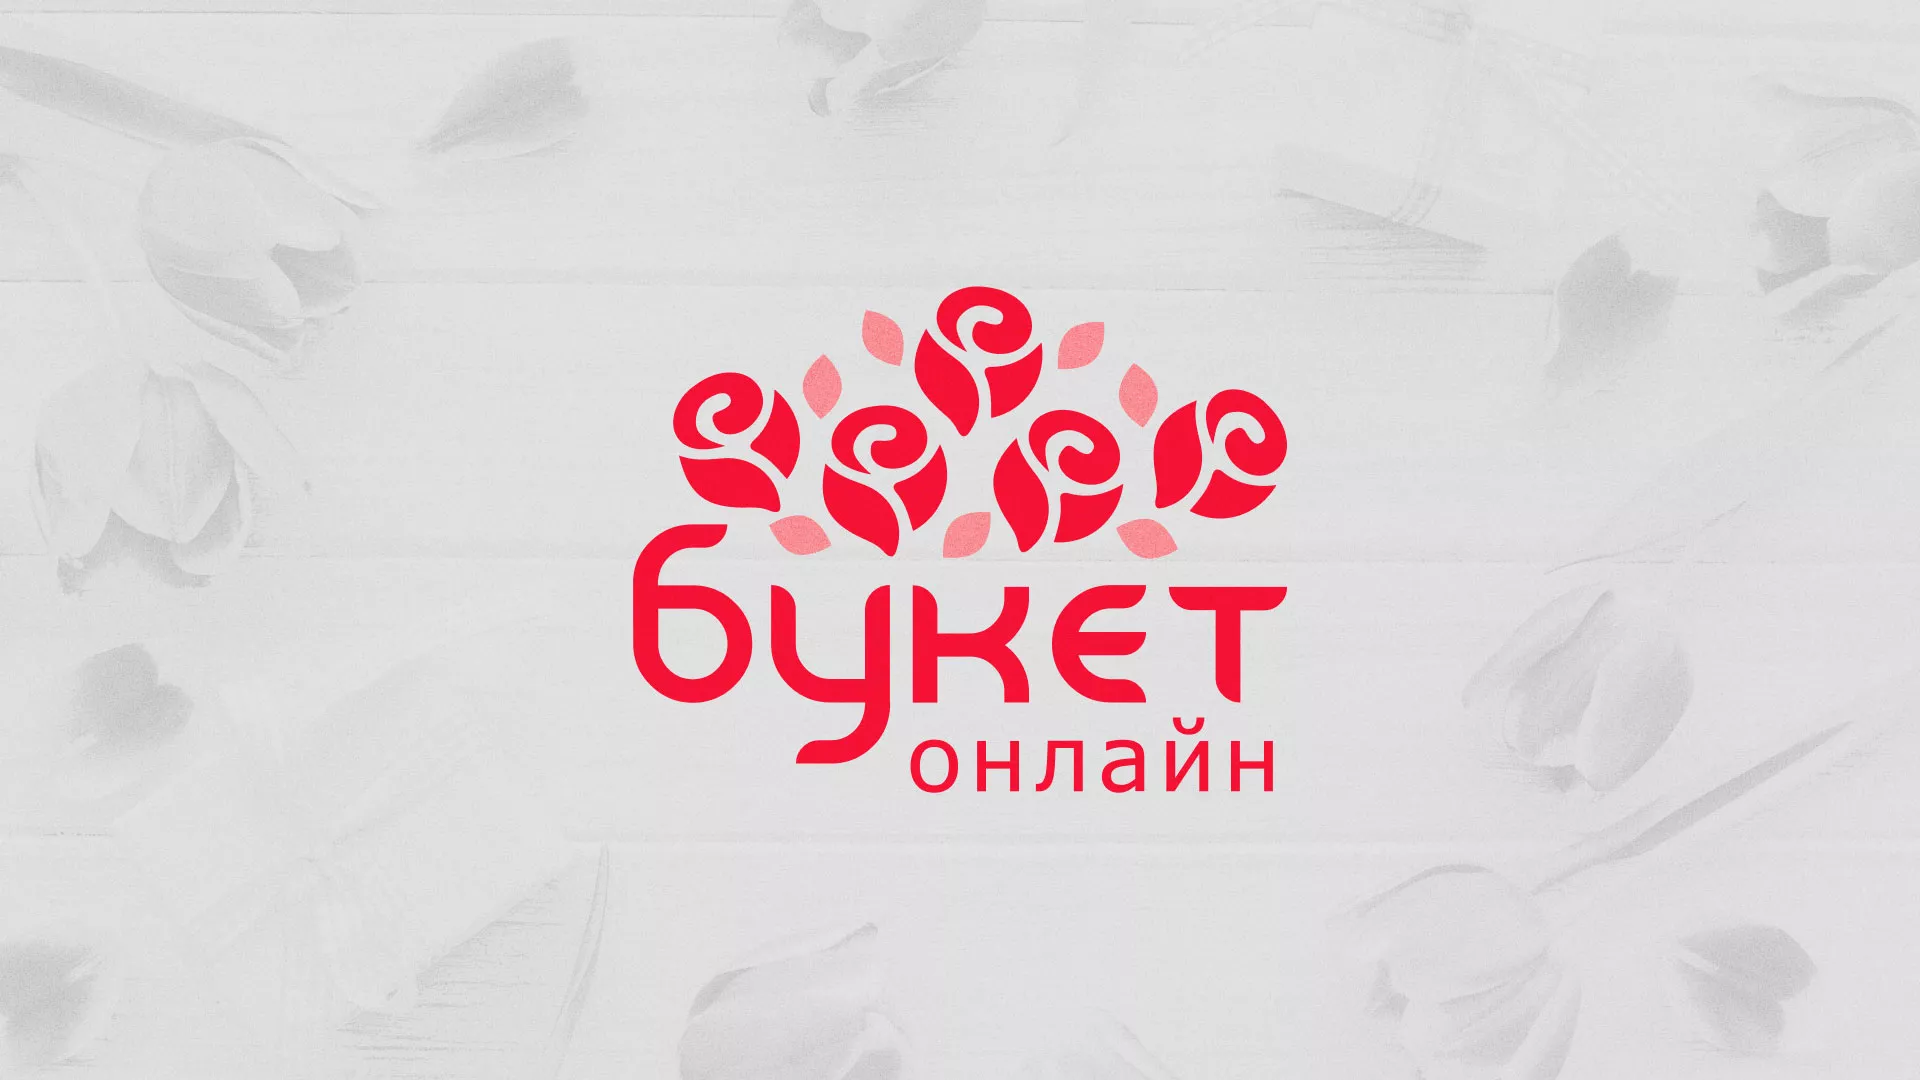 Создание интернет-магазина «Букет-онлайн» по цветам в Болгаре